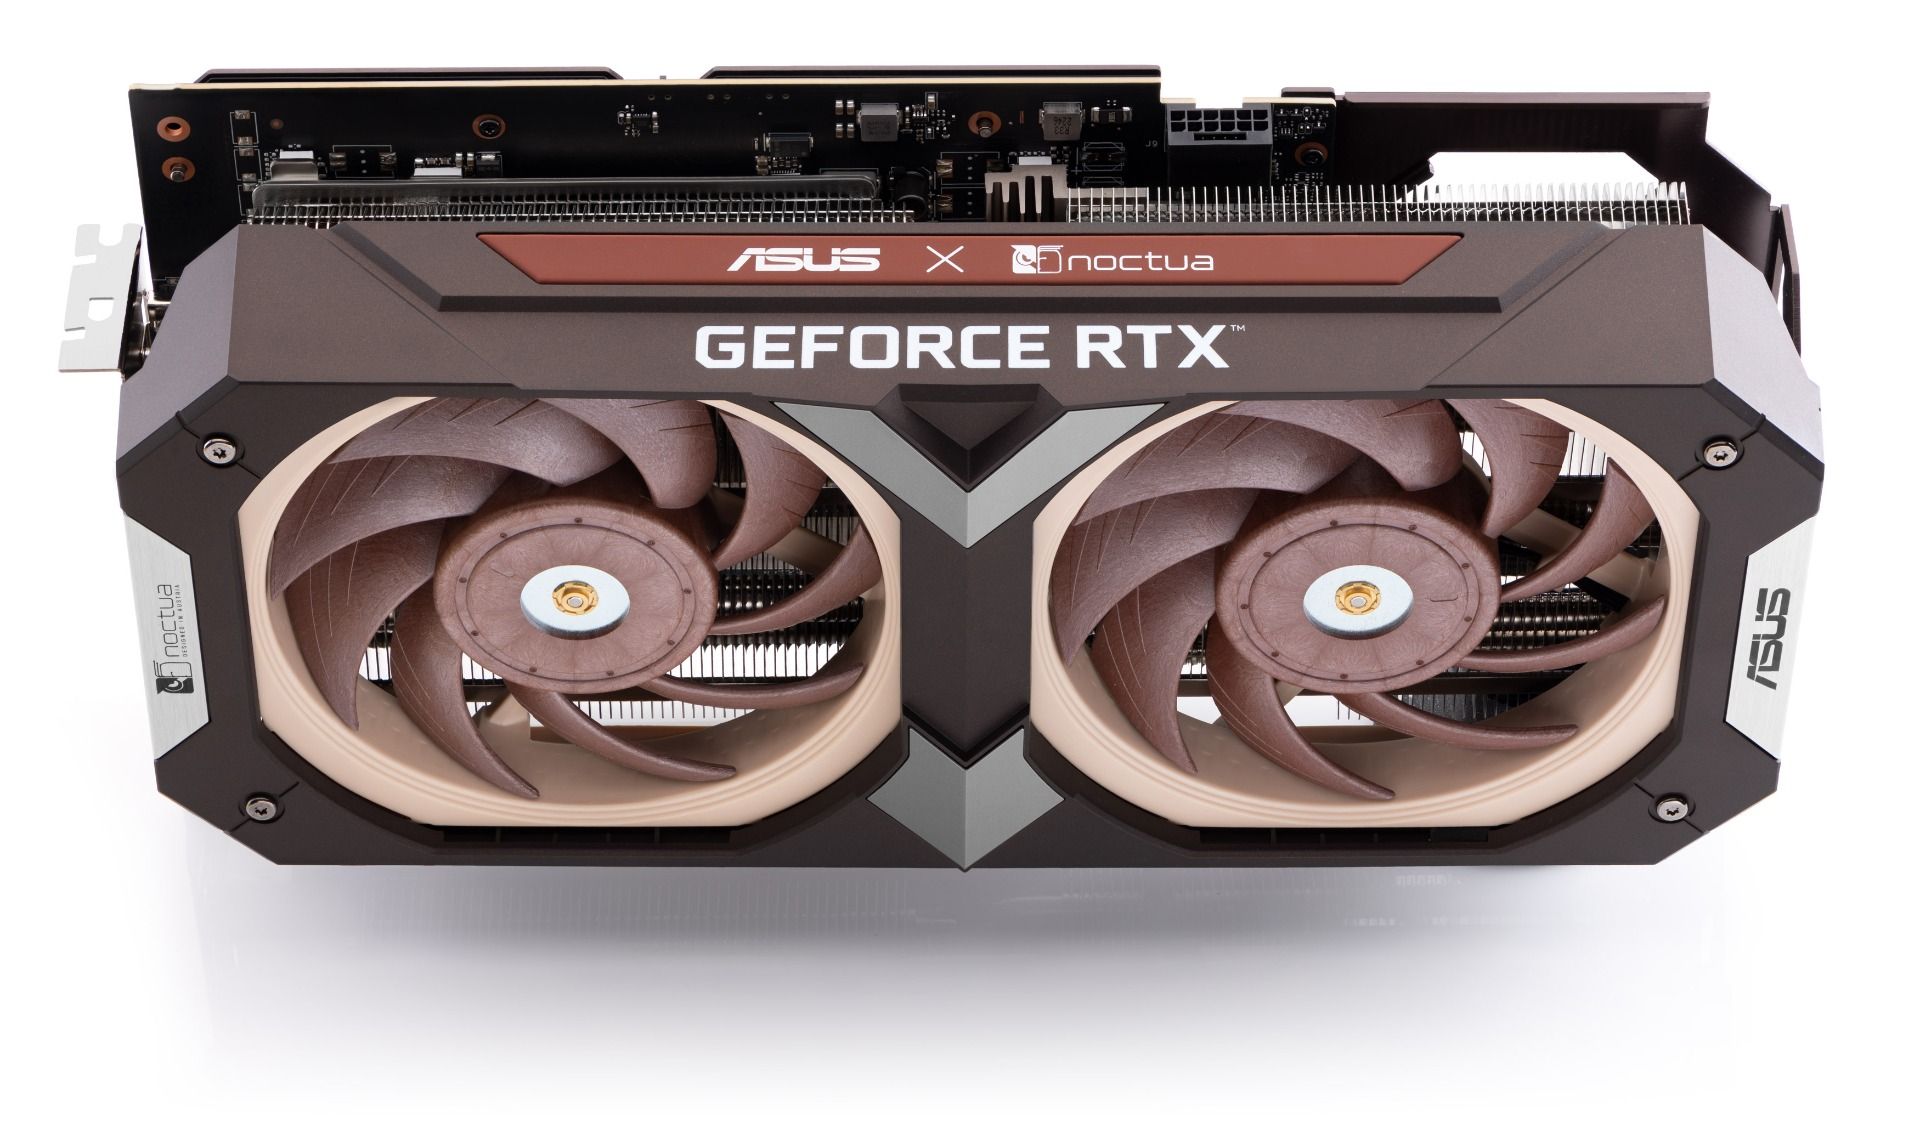 ASUS GeForce RTX 4080 Noctua Edition